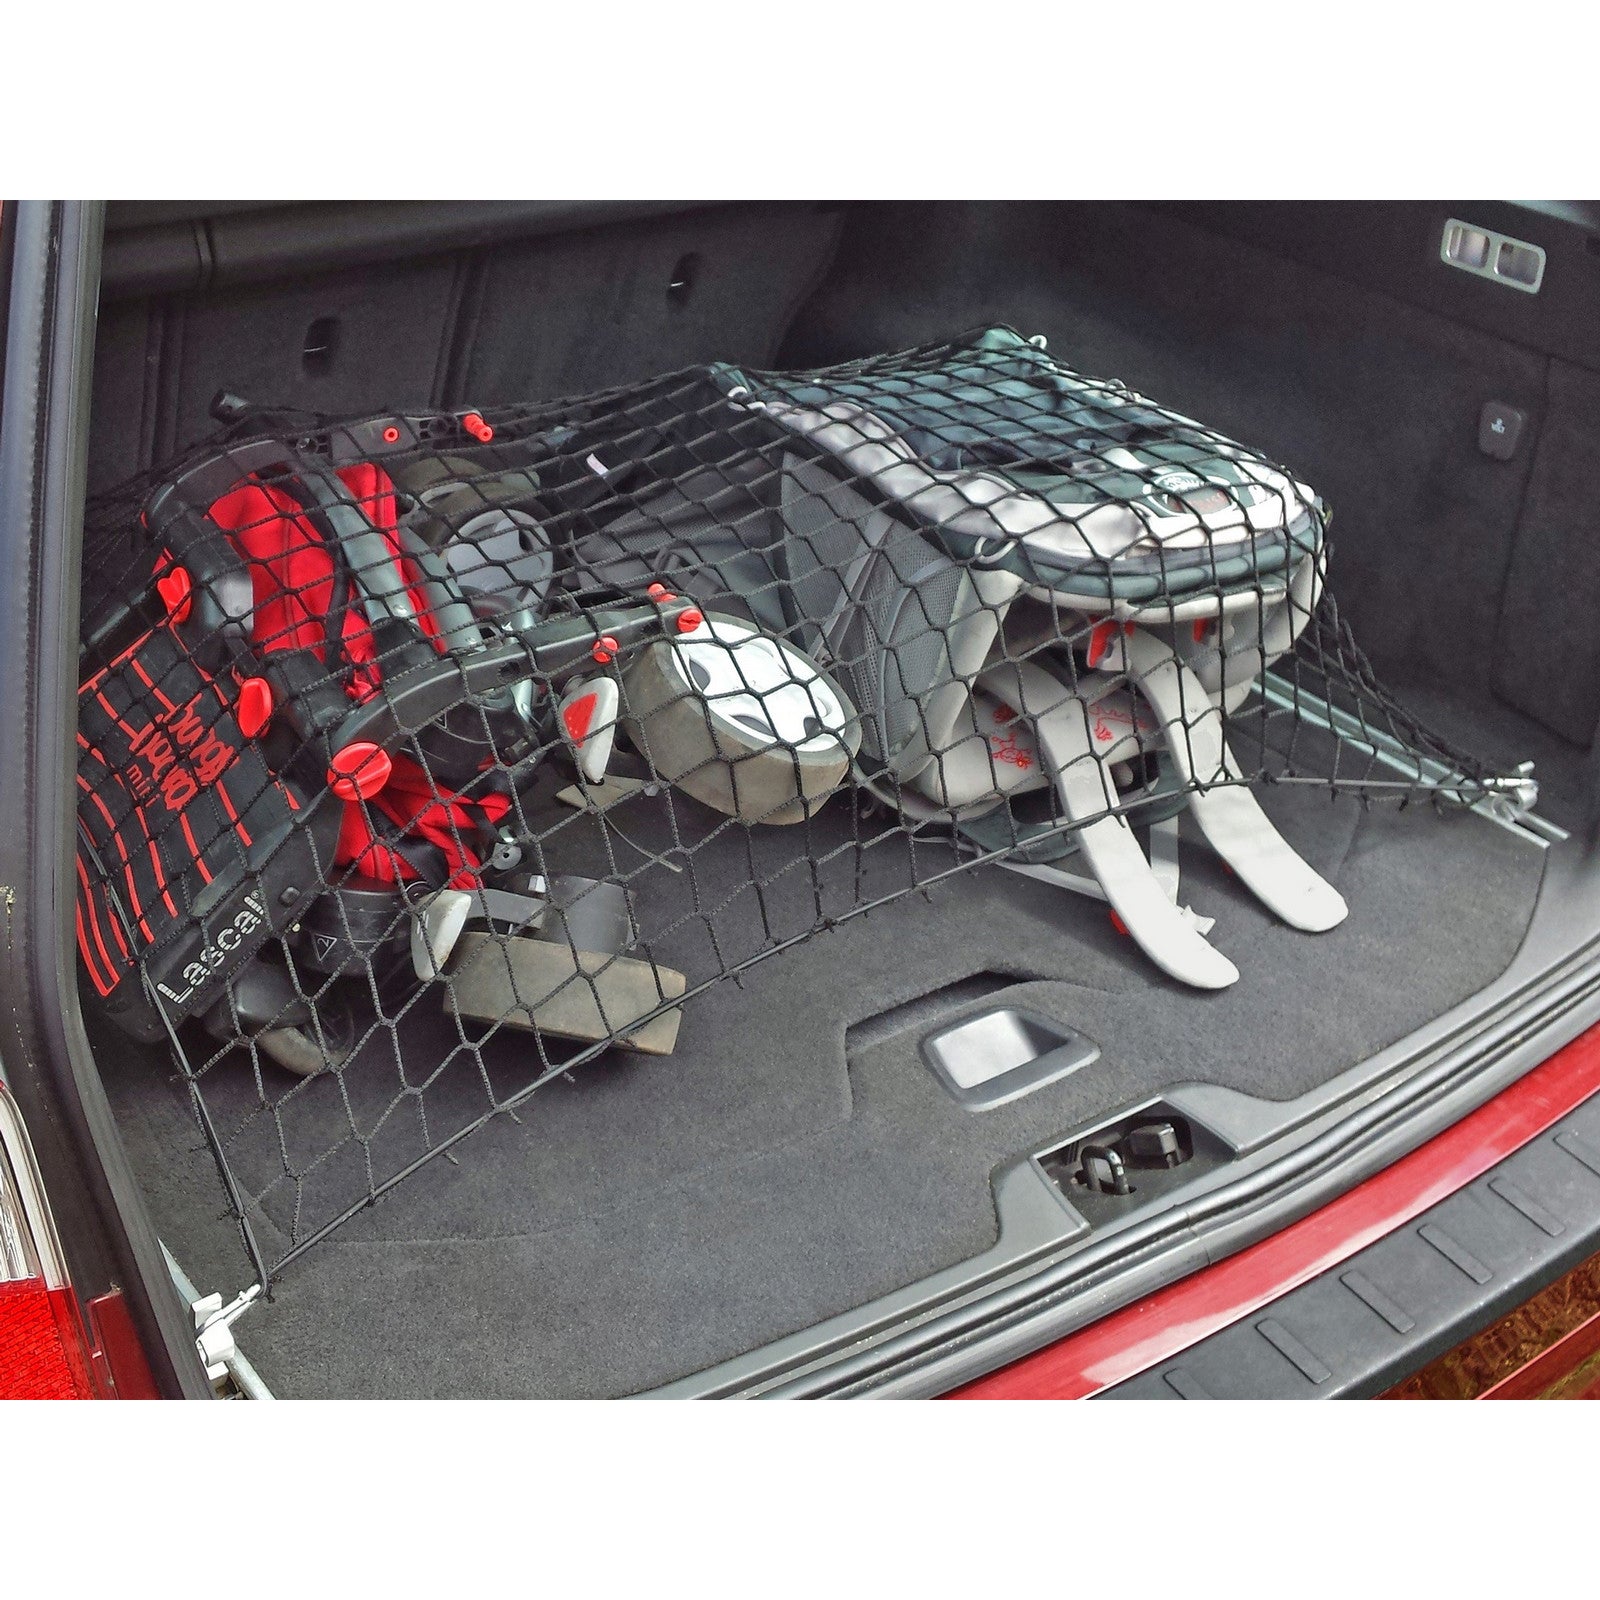 Autosiatki Kofferraumbodennetz Netz Gepäcknetz für Hyundai i20 3